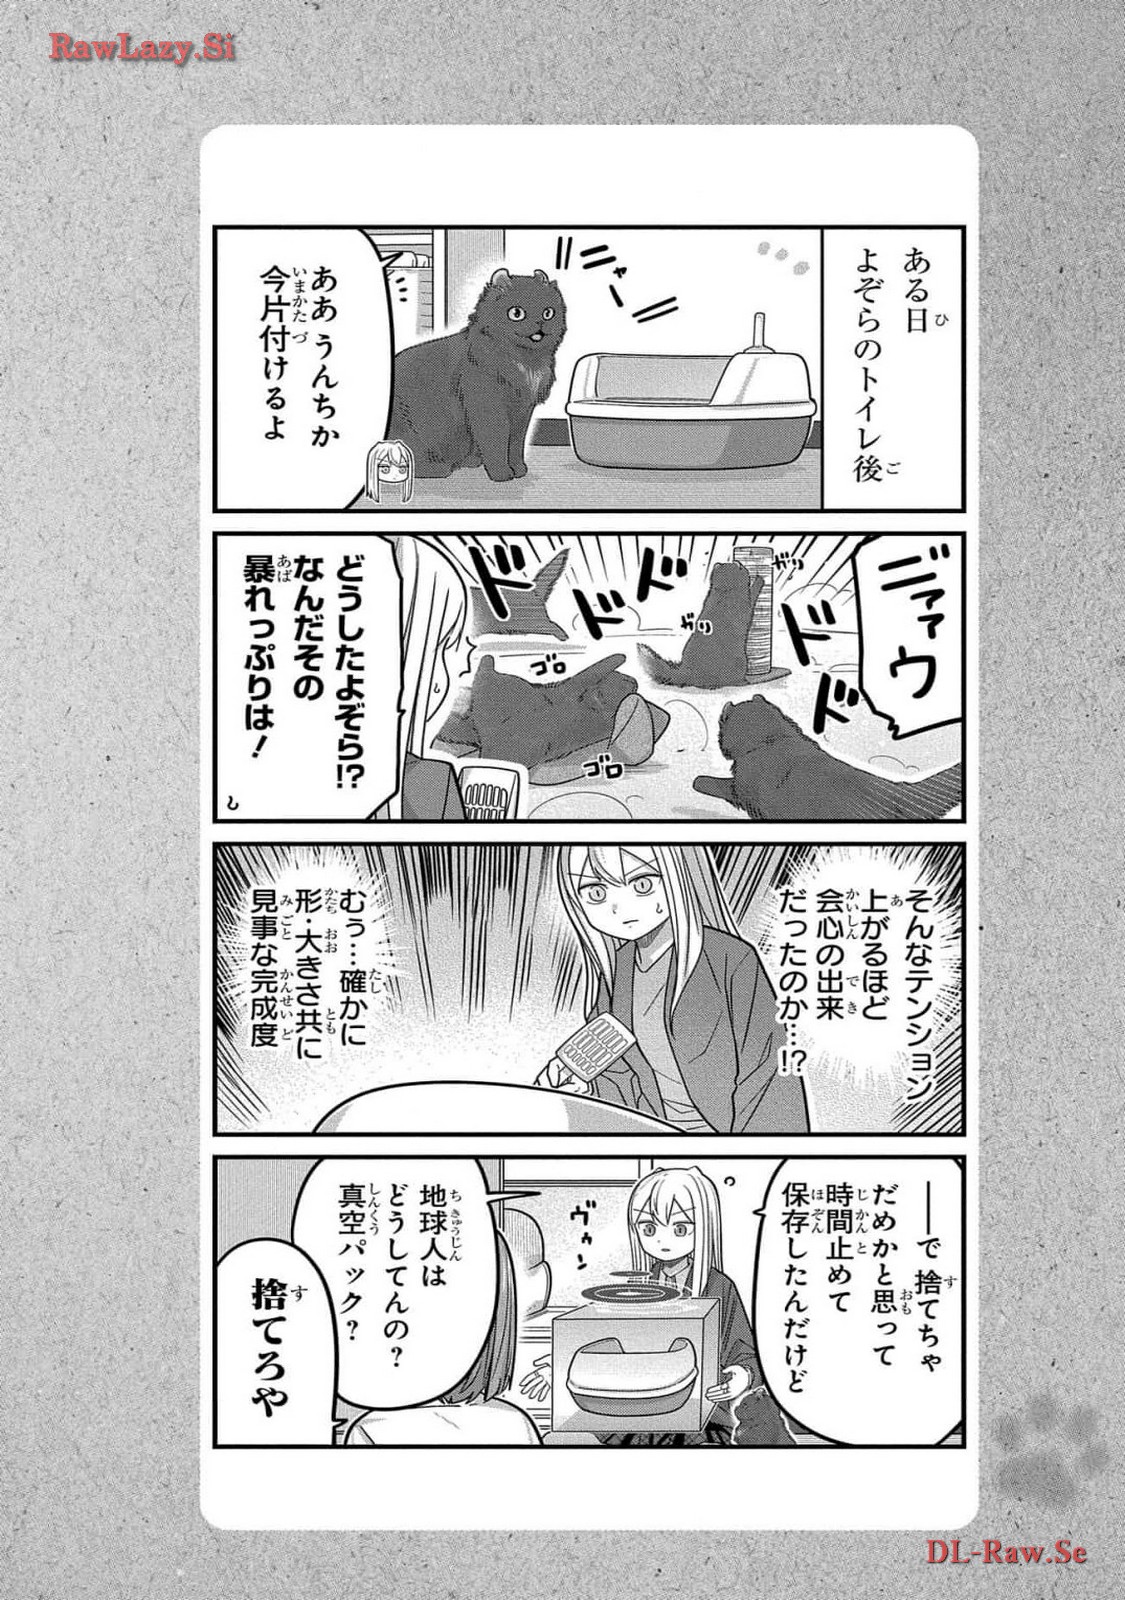 Kawaisugi Crisis - Chapter 99 - Page 18